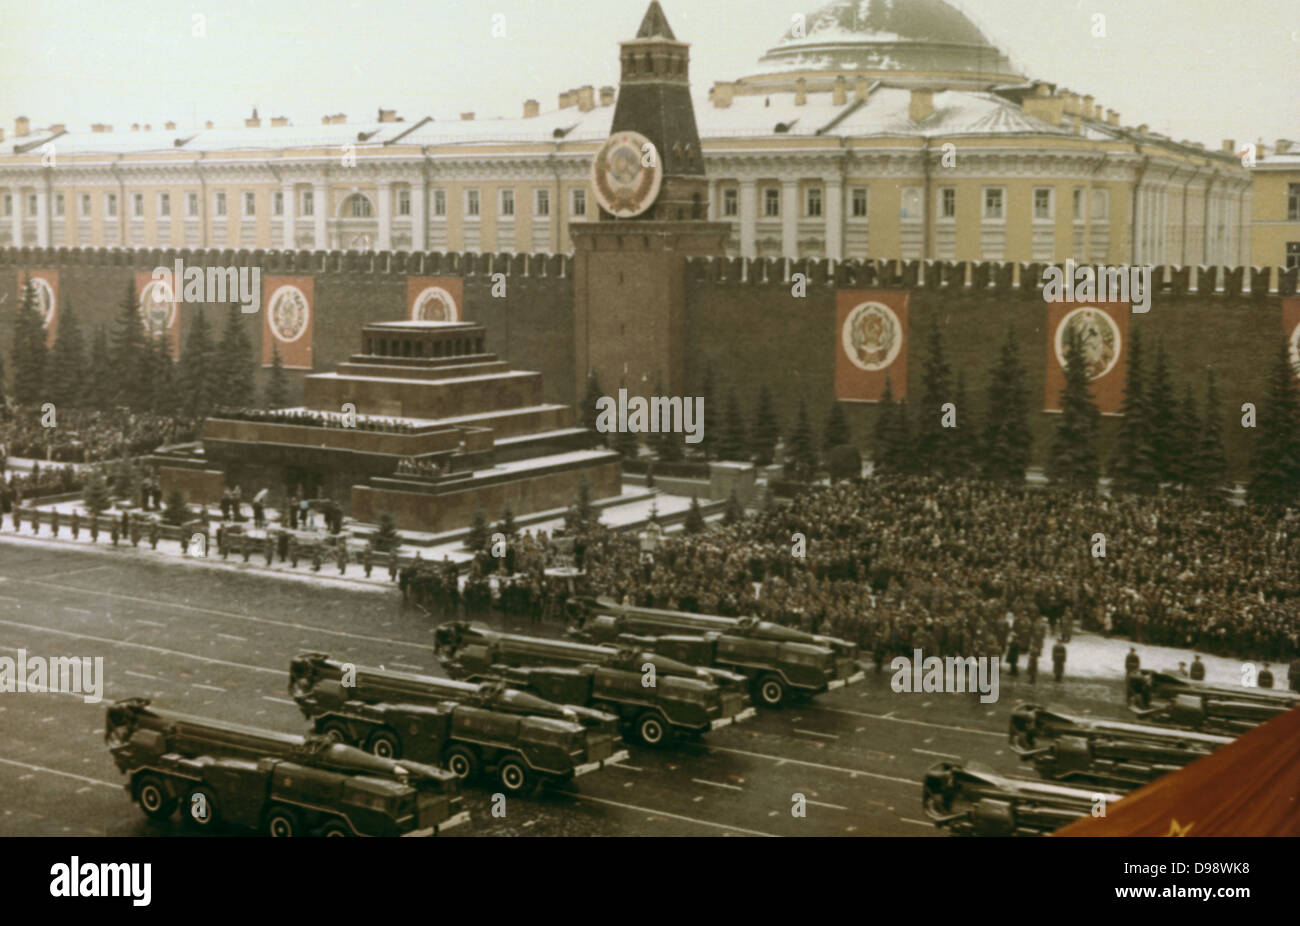 Revisione militare, Piazza Rossa di Mosca, 7 novembre 1971. Sovietico comunista URSS Russia. Foto Stock